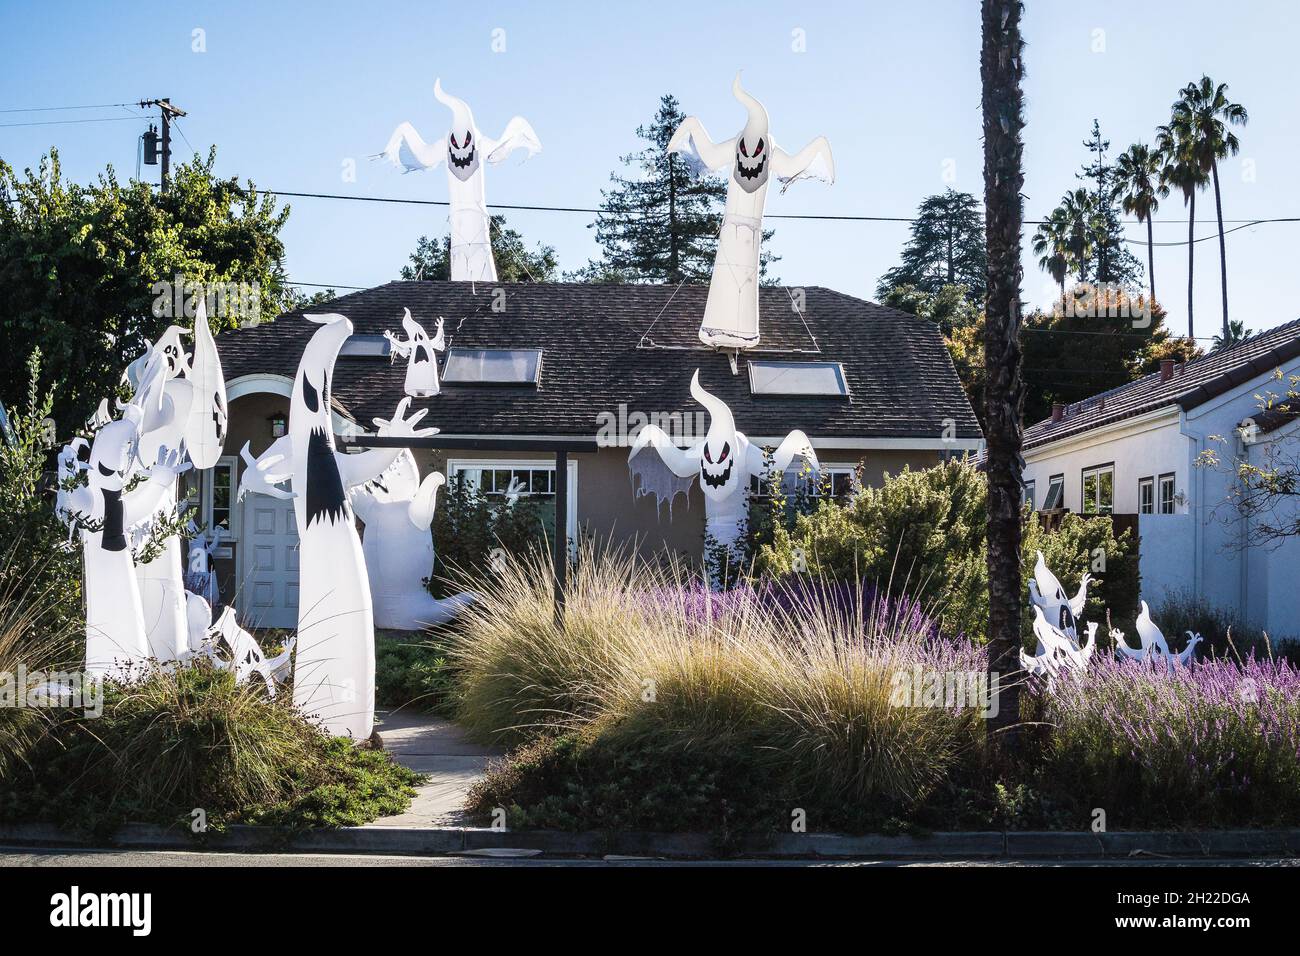 Pequeña casa encantada en California con más de una docena de fantasmas inflables; en el techo y en el jardín entre las plantas - un halloween espeluznante Foto de stock